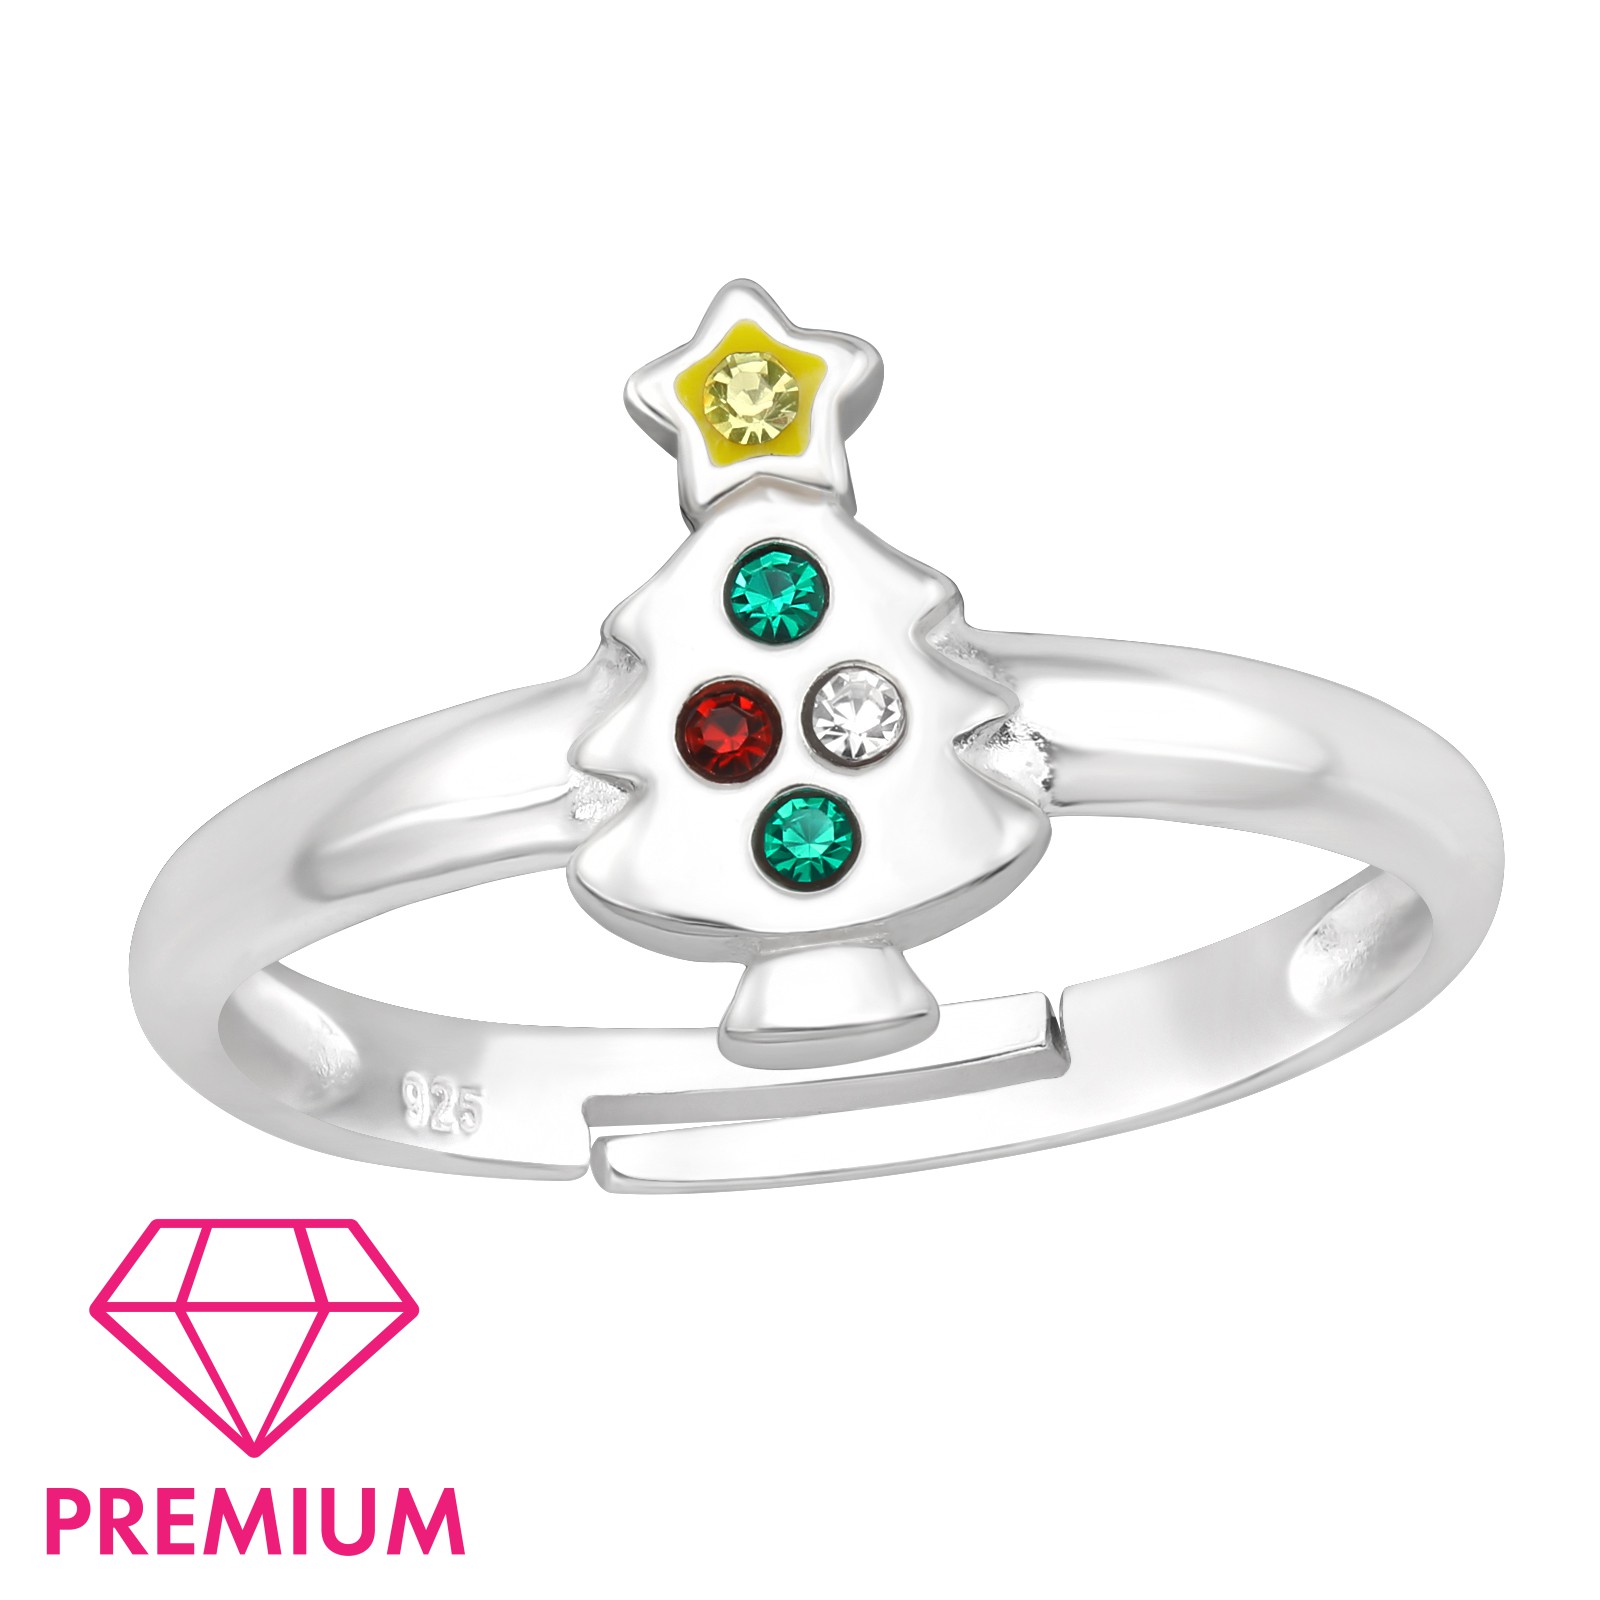  Karácsonyfás állítható gyerek prémium ezüst gyűrű